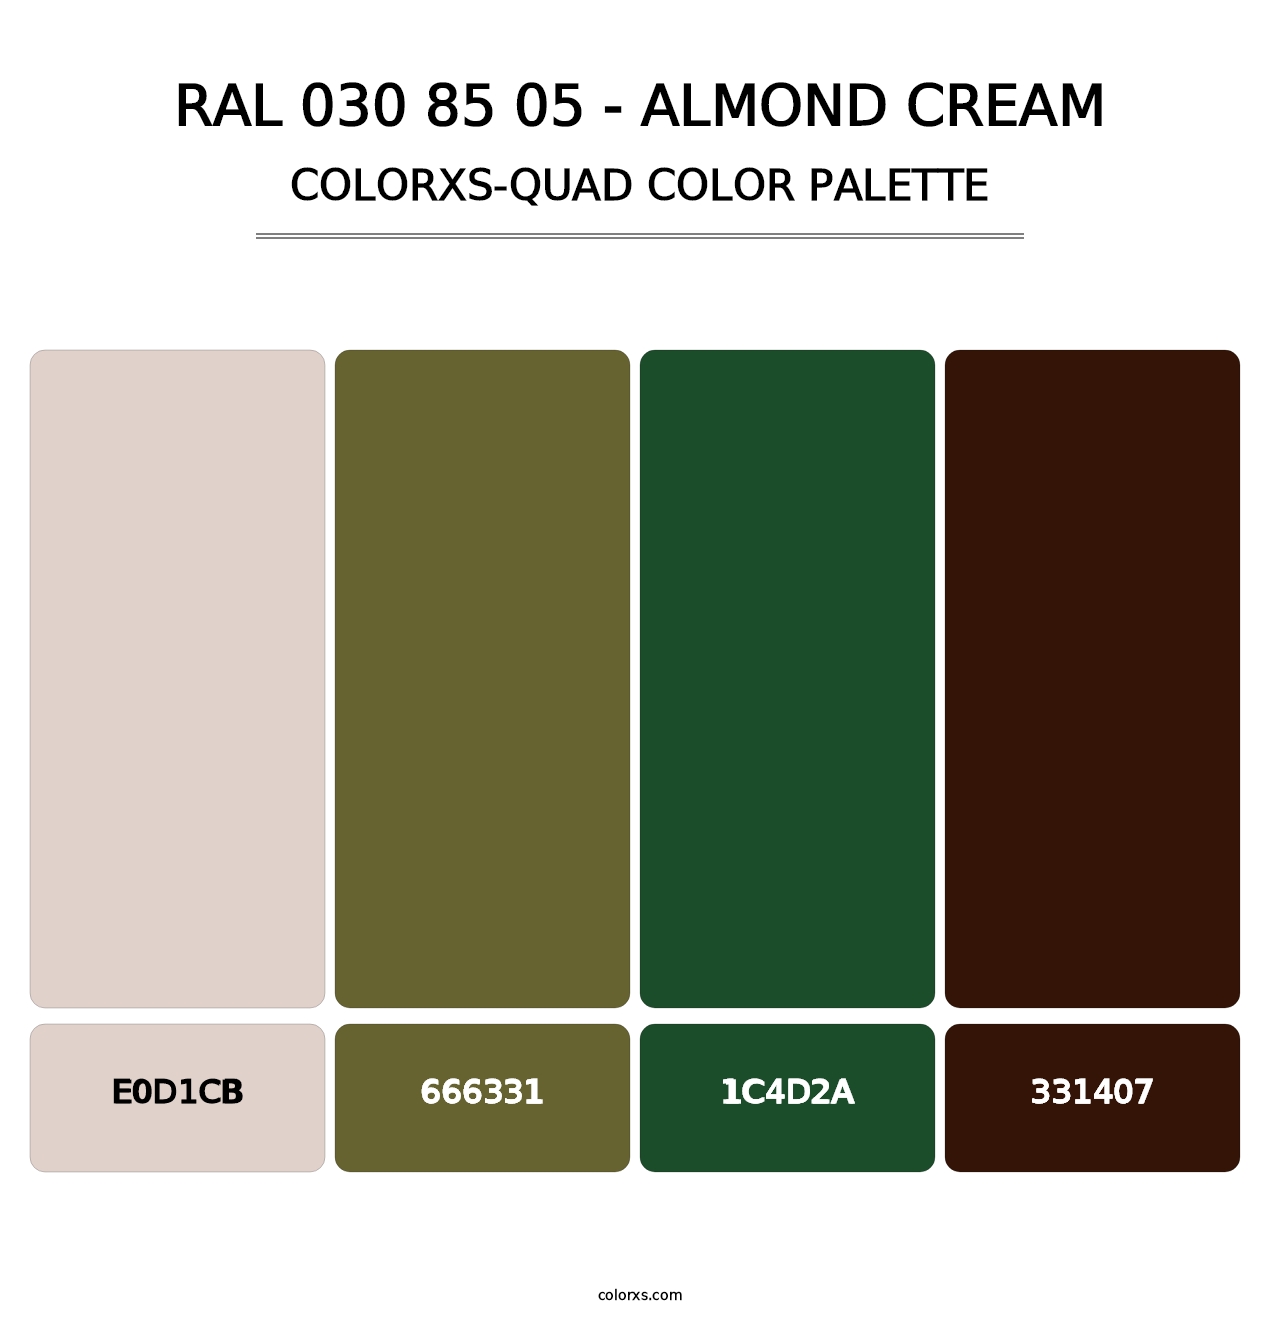 RAL 030 85 05 - Almond Cream - Colorxs Quad Palette